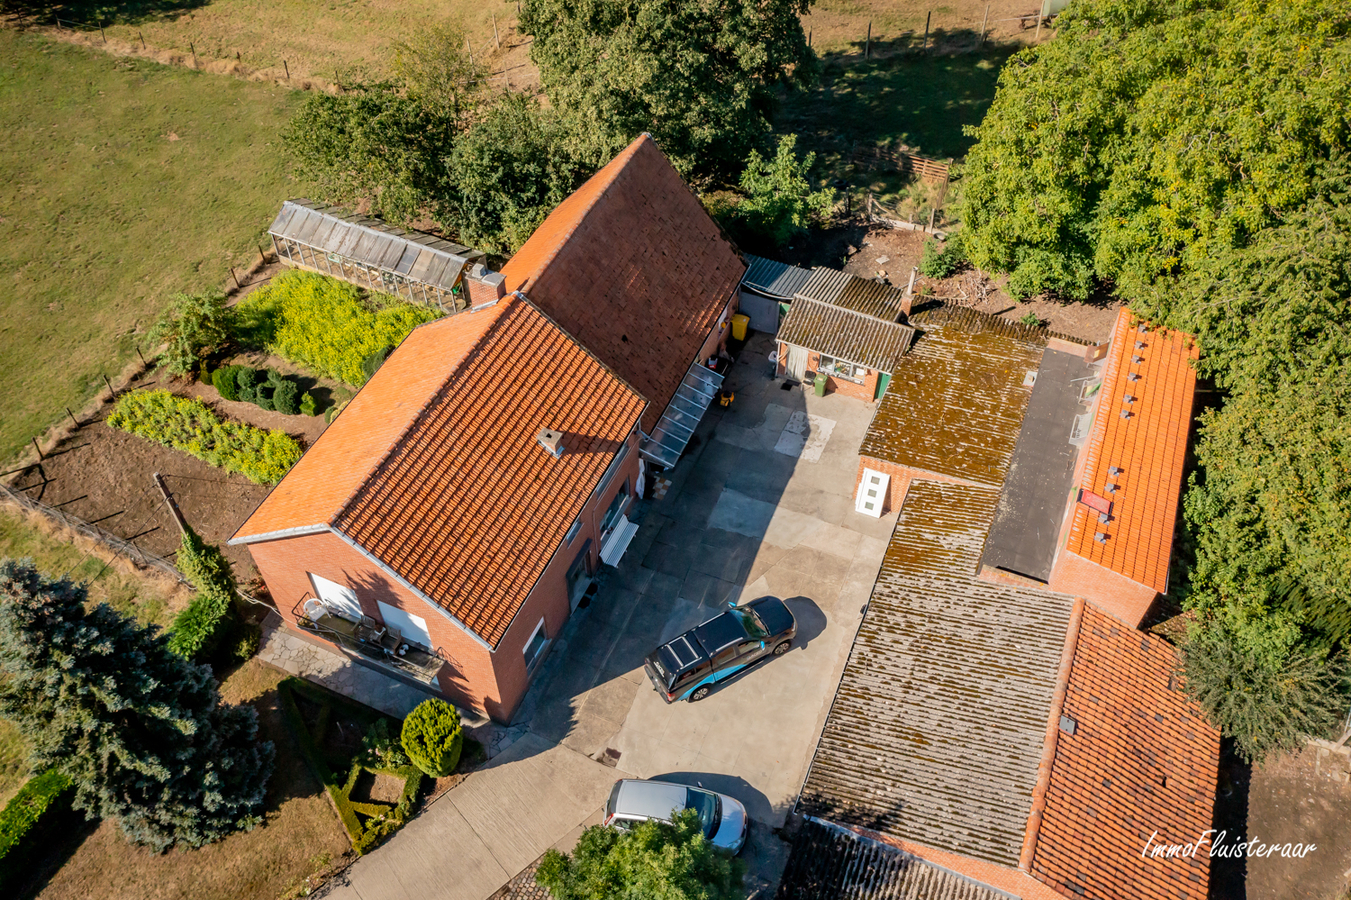 Property sold in Kersbeek-Miskom